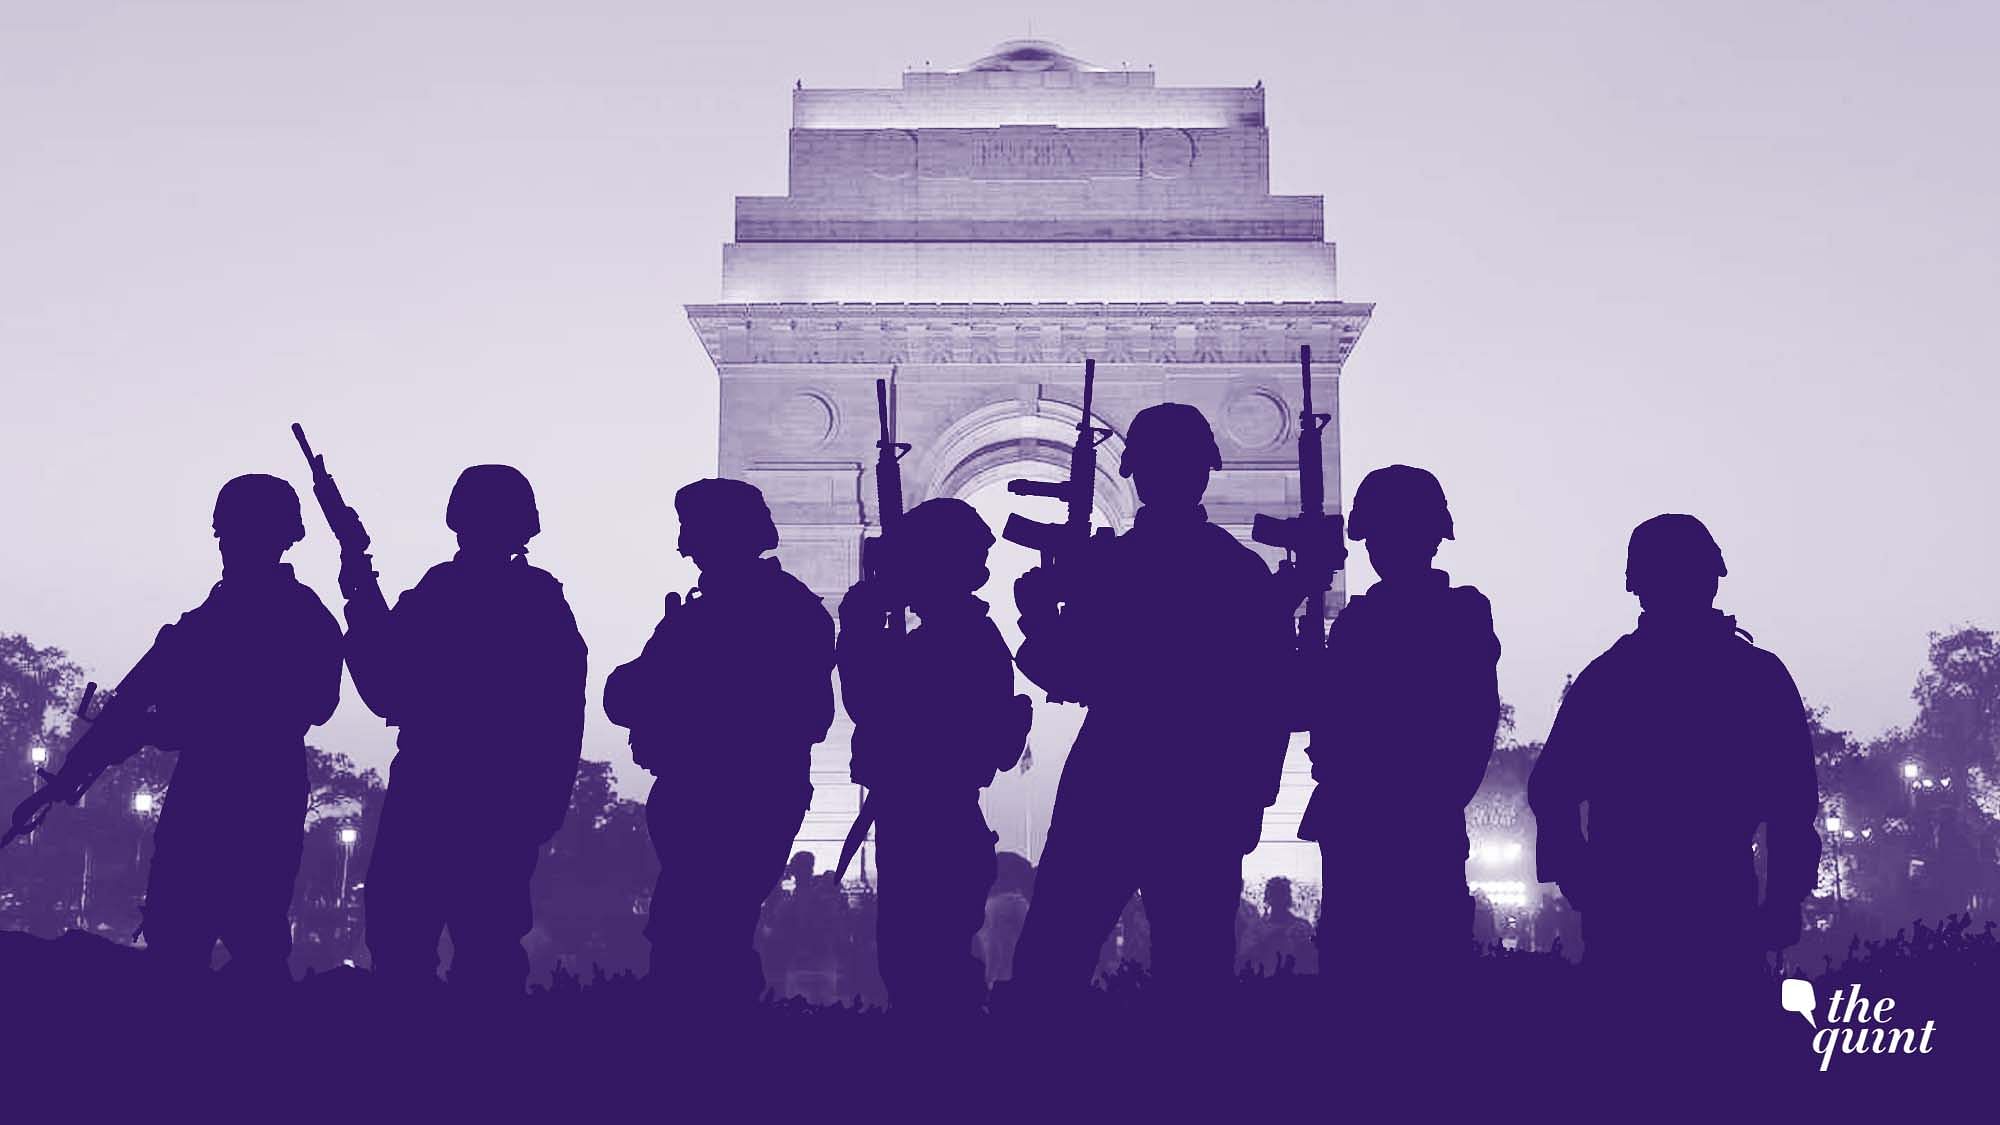 A Major Landmark, Delhi’s War Memorial Still Has a Long Way to Go.